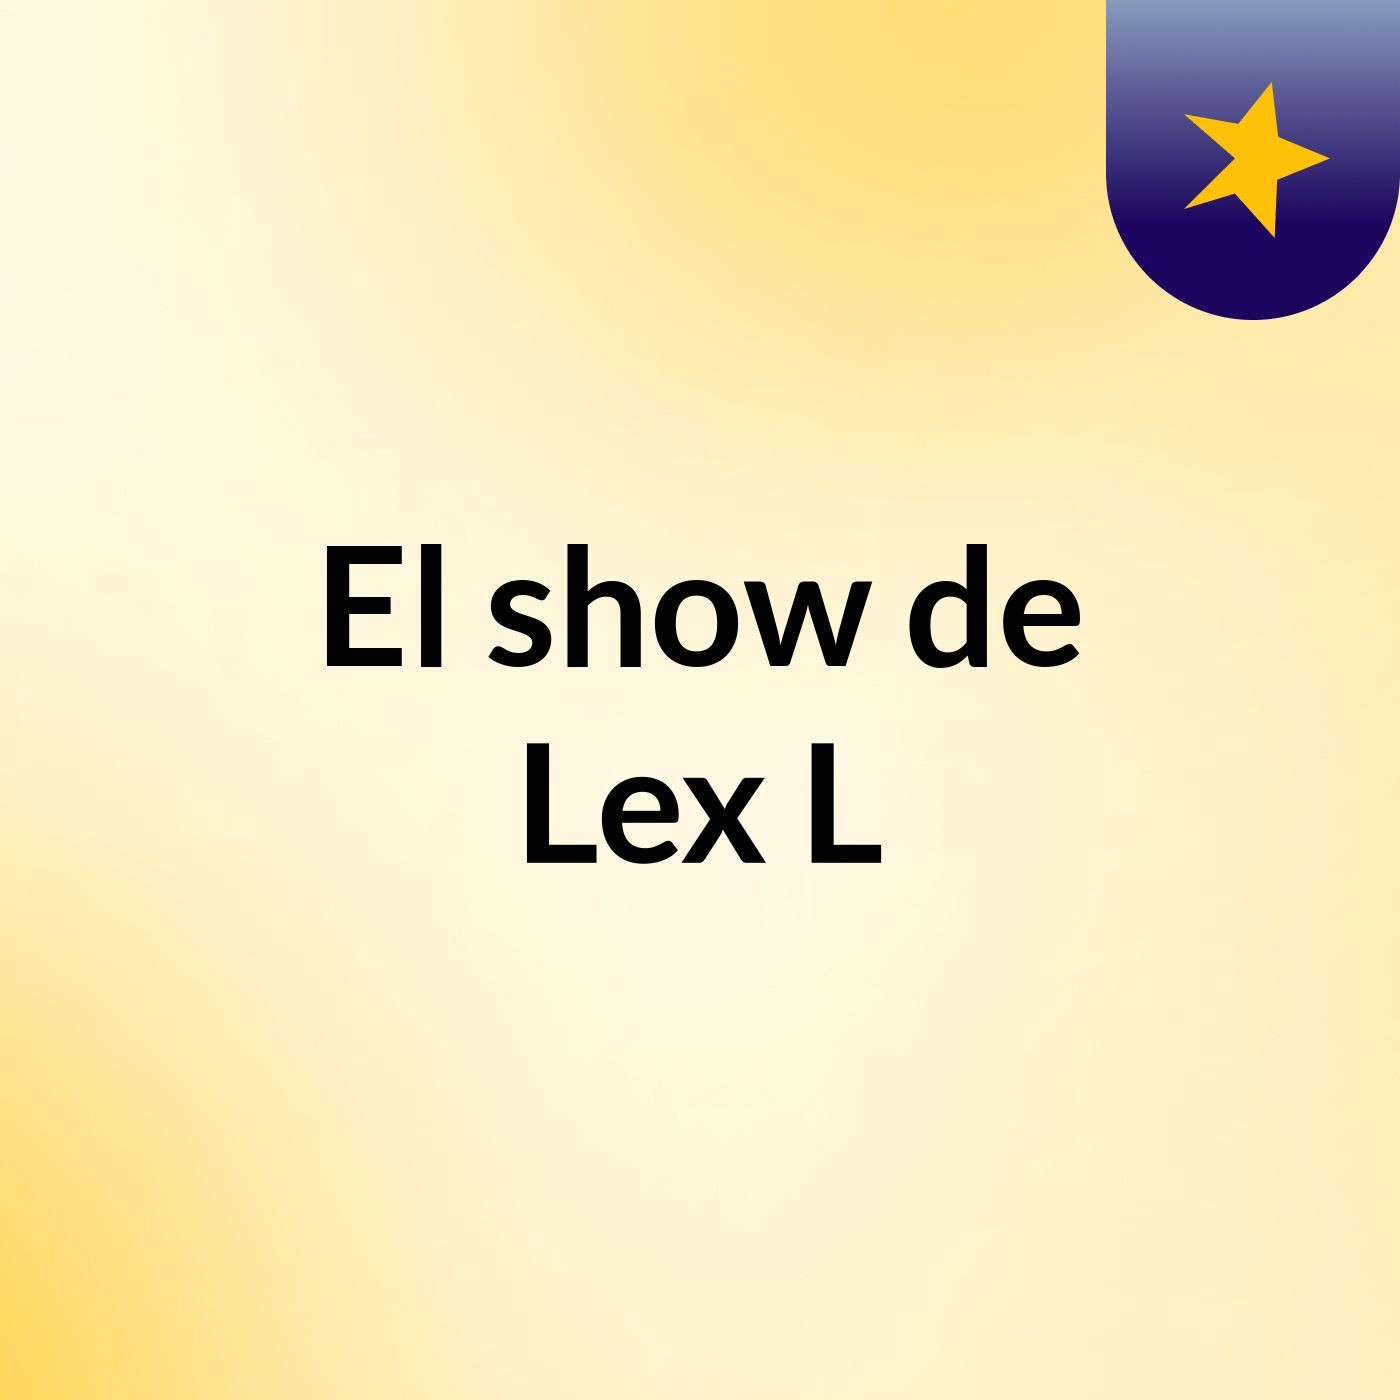 El show de Lex L